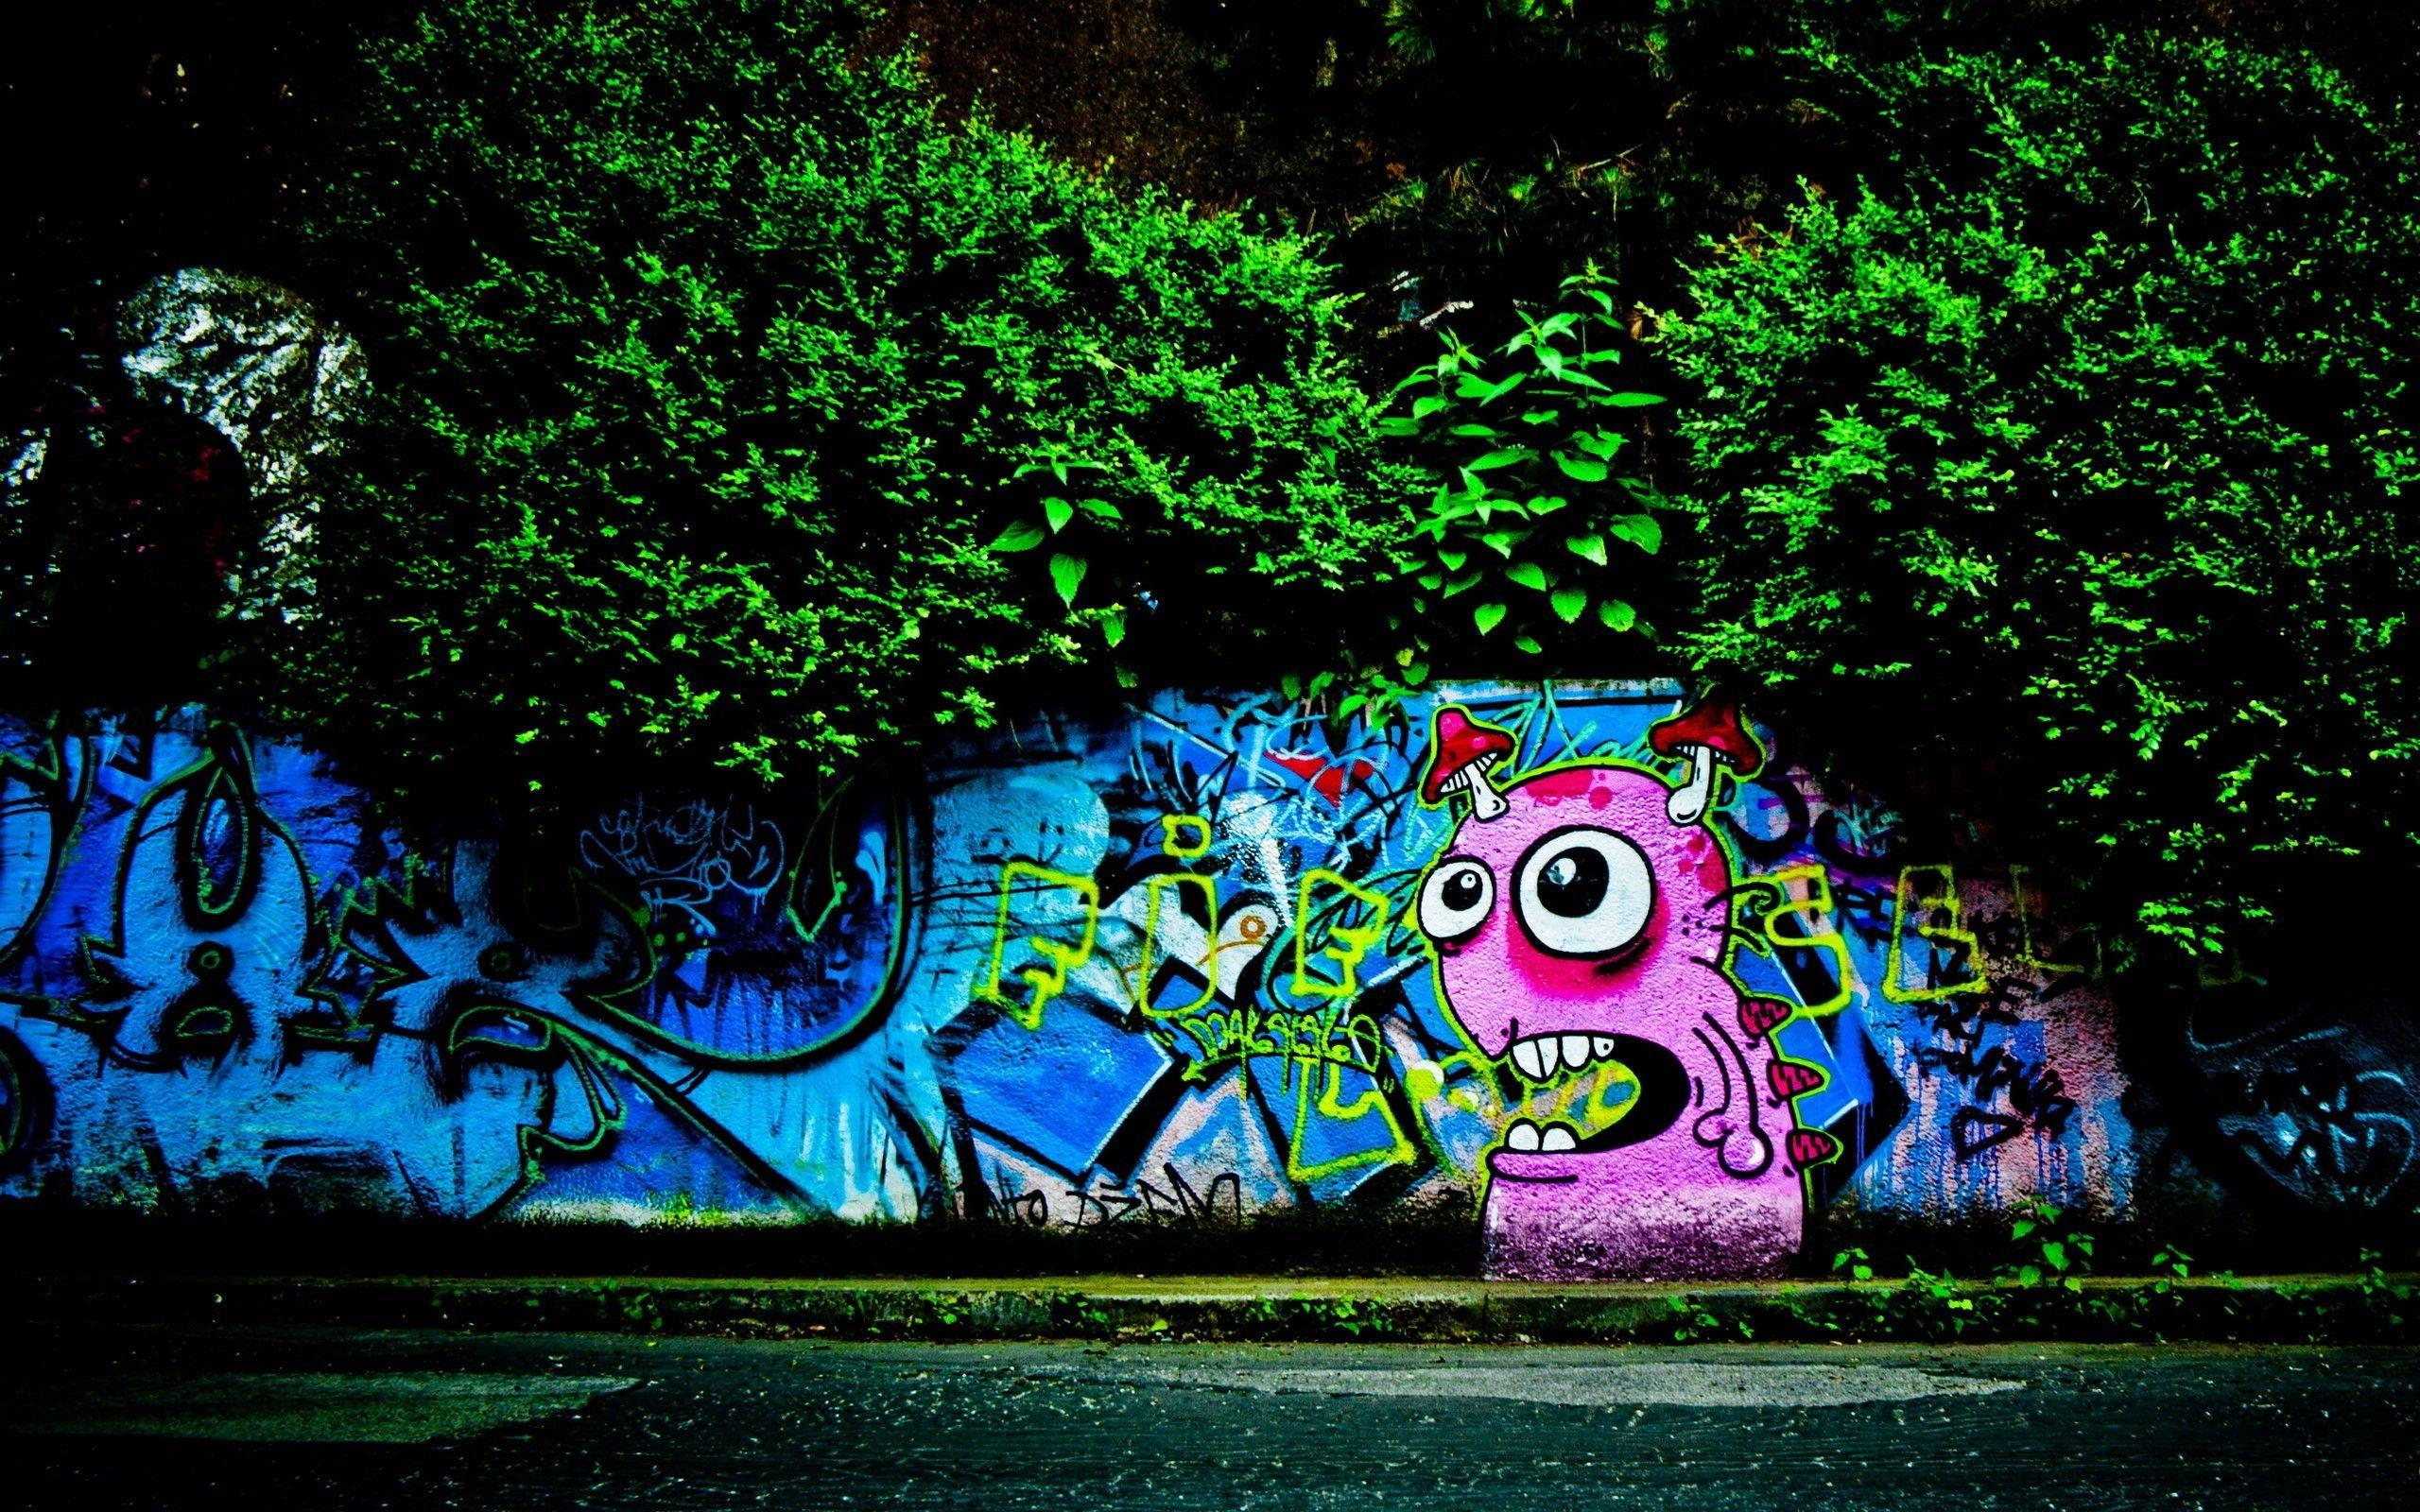 Street Art HD desktop wallpaper High Definition Fullscreen. Street